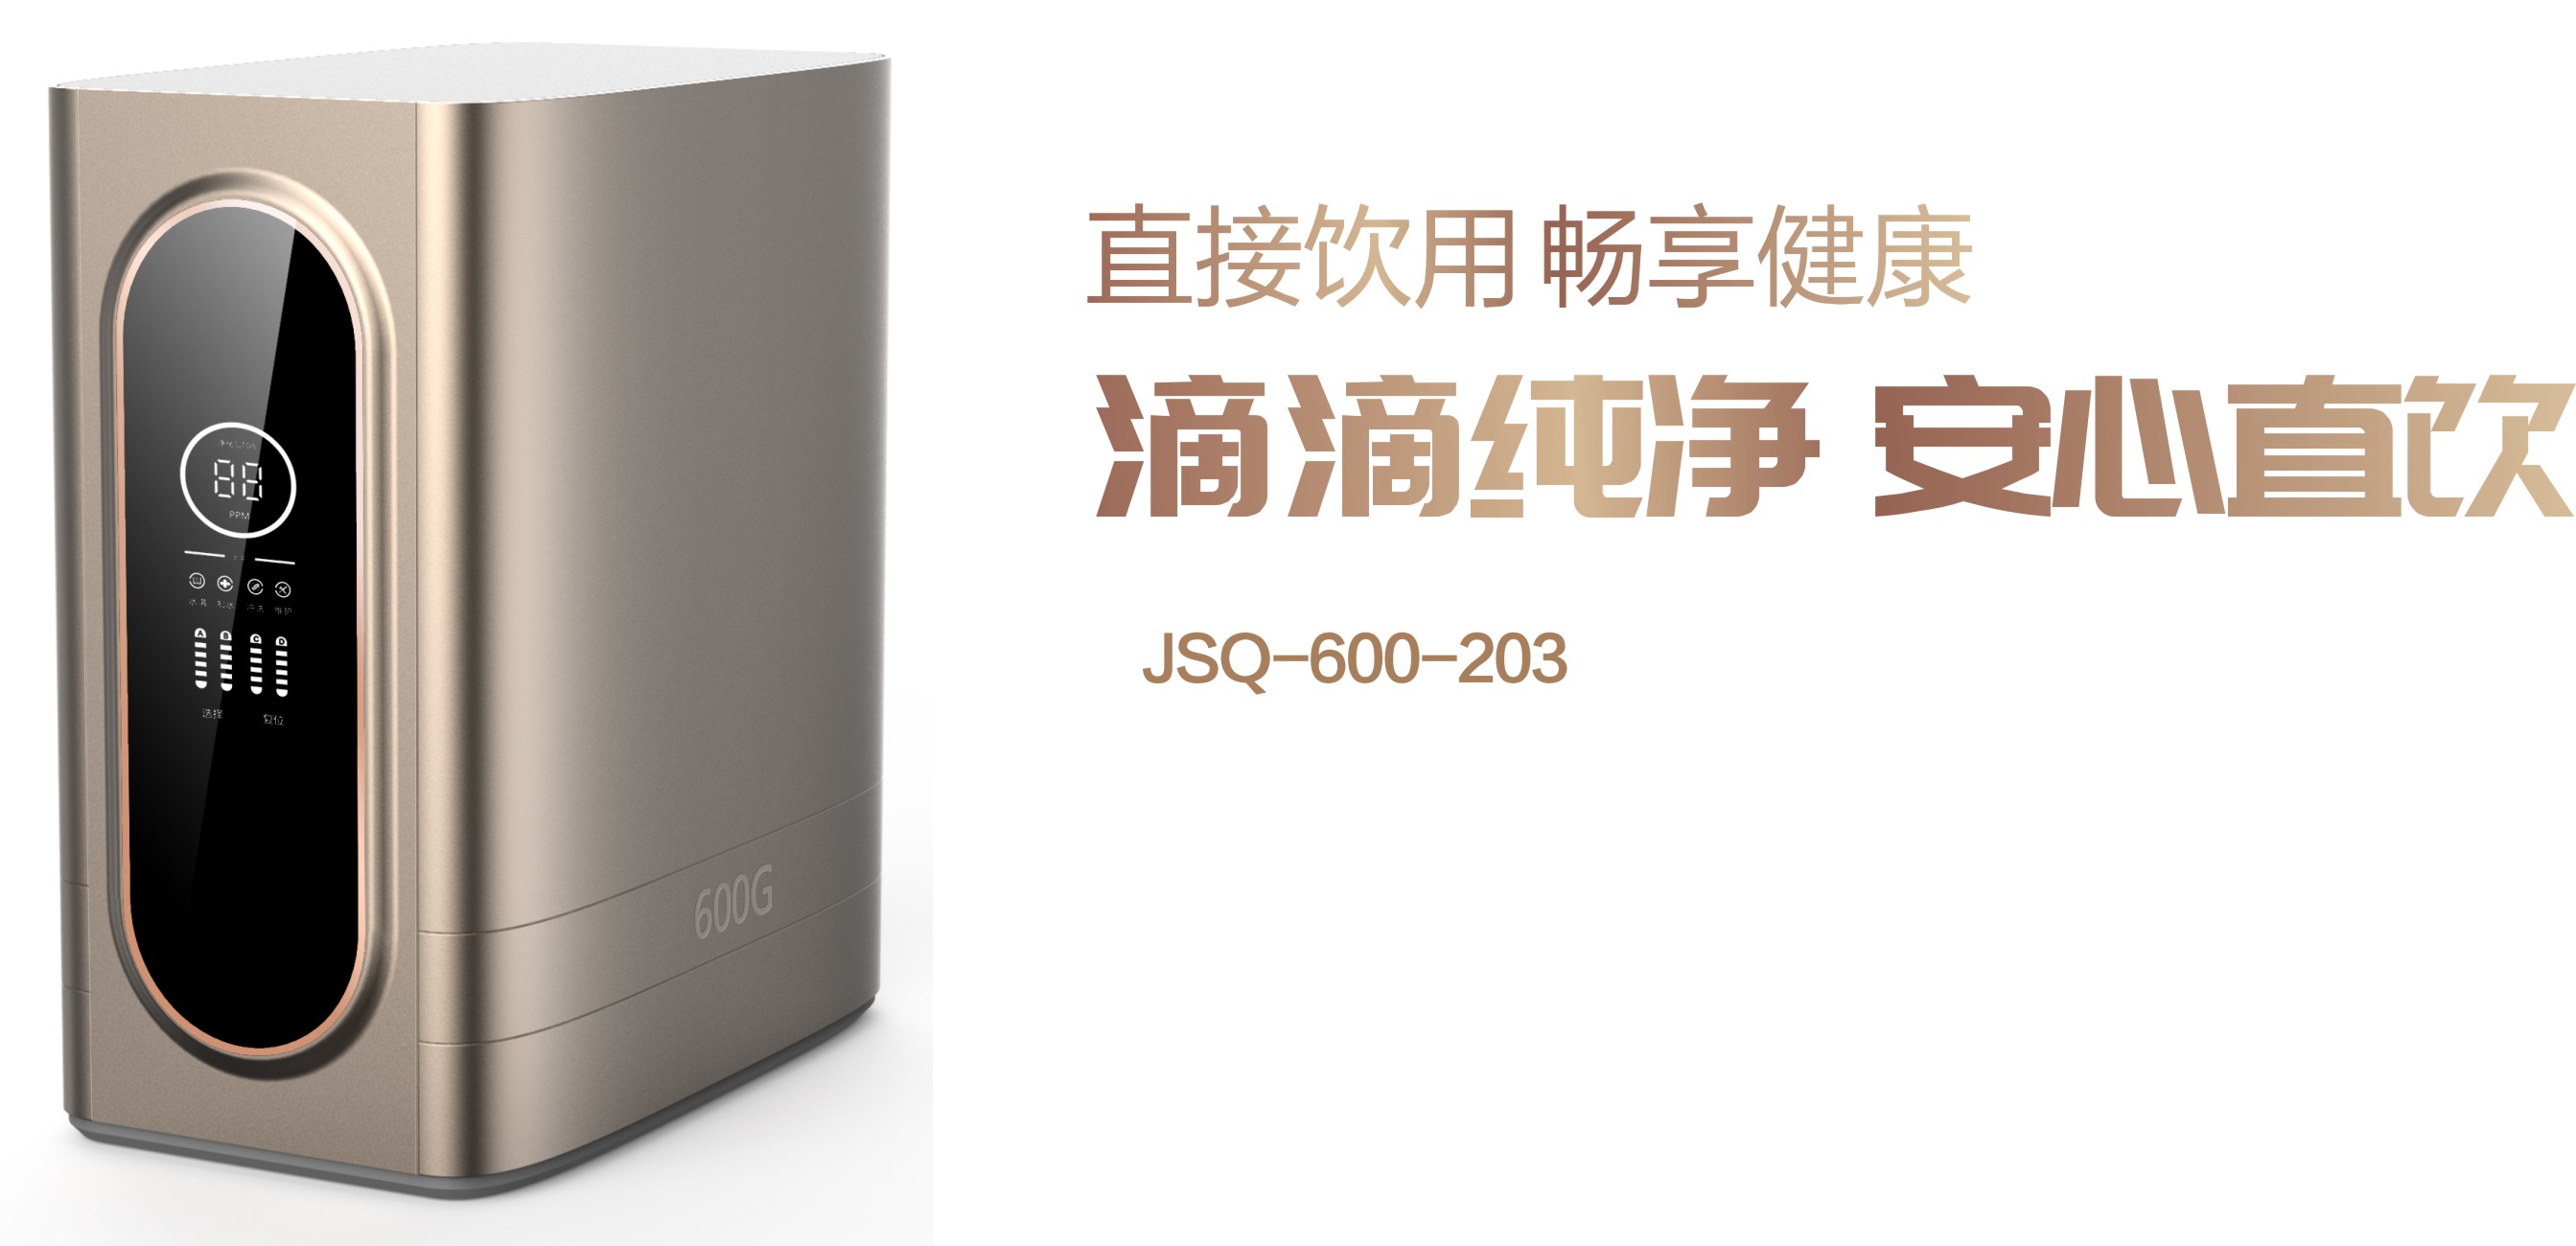 JSQ-600-203